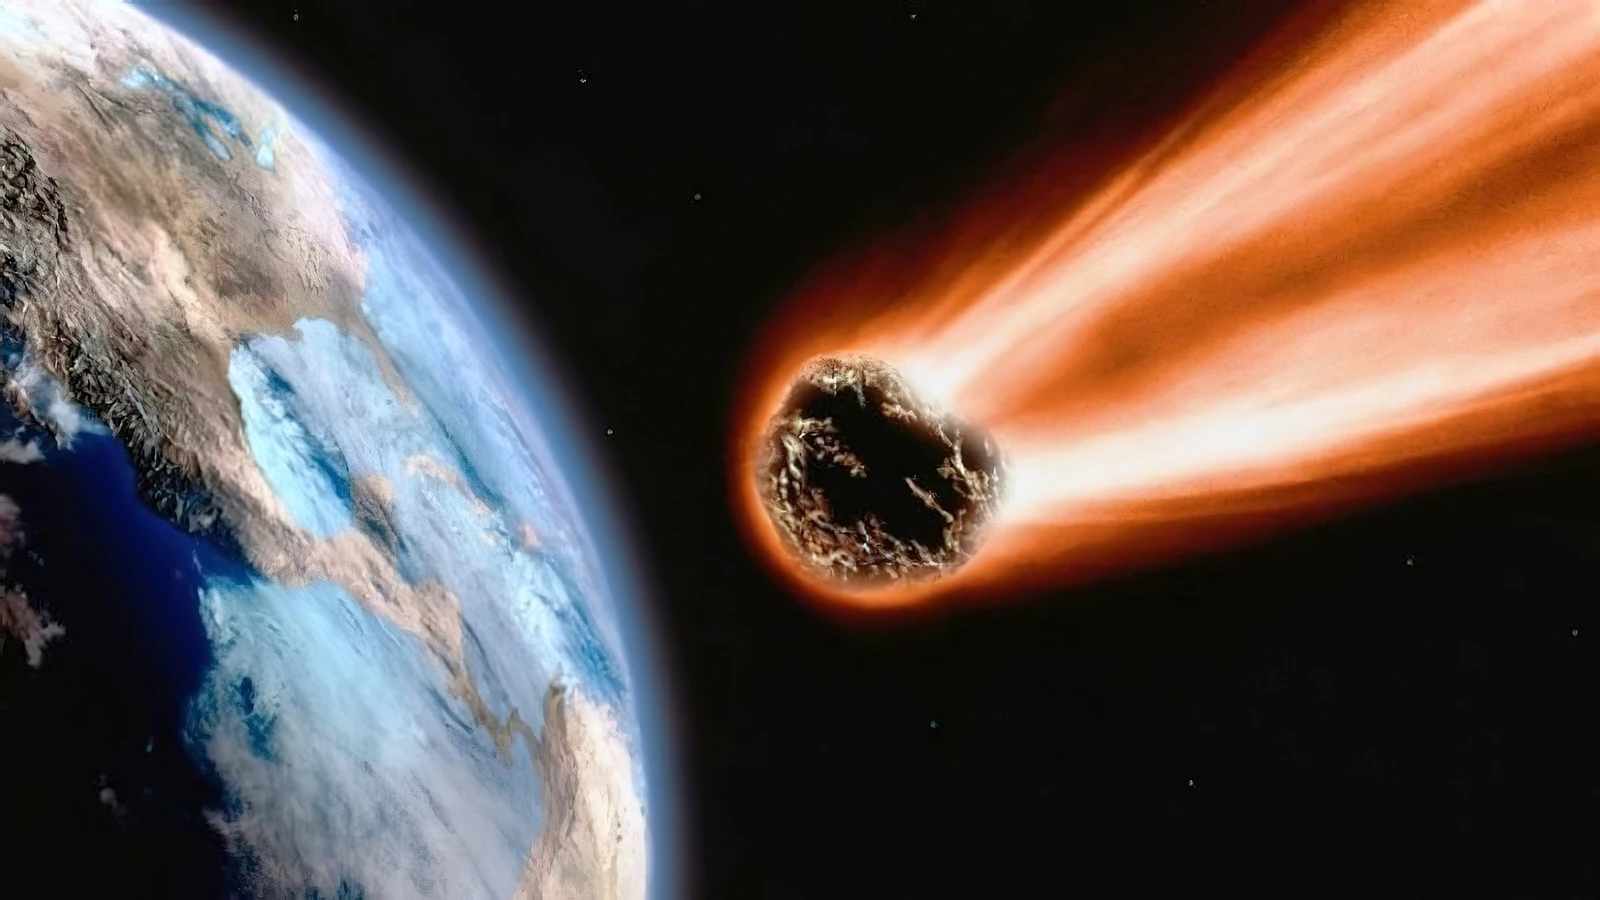 چین از ماه برای از بین بردن سیارک های مرگبار استفاده می کند، برنامه ریزی برای "خروج از این جهان"